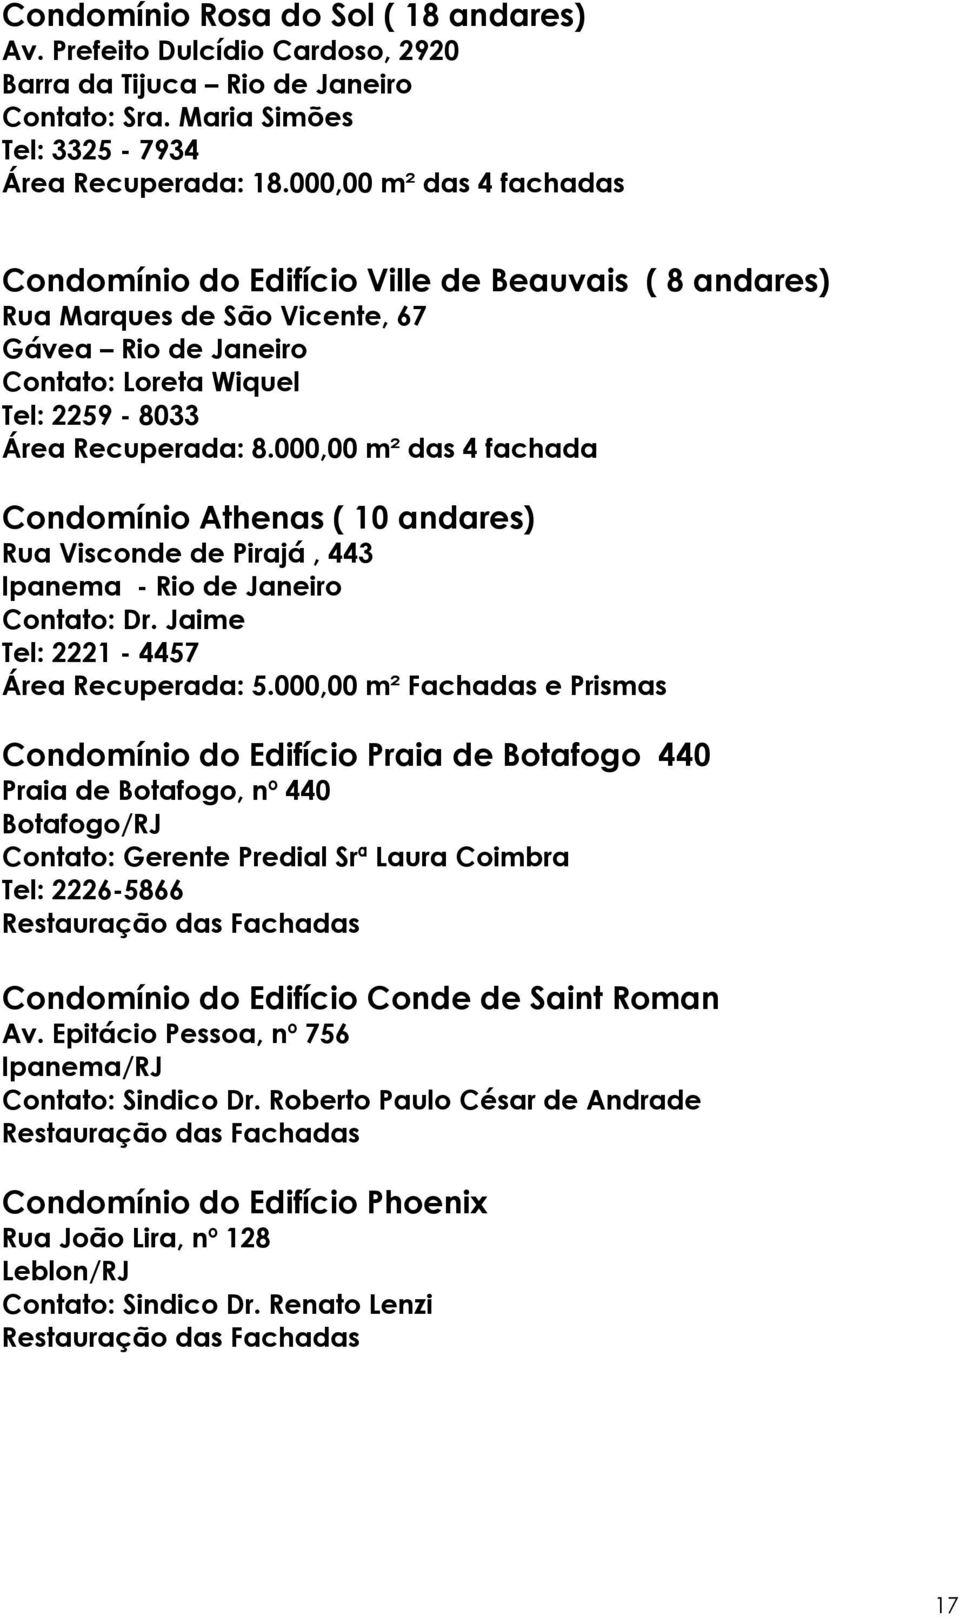 000,00 m² das 4 fachada Condomínio Athenas ( 10 andares) Rua Visconde de Pirajá, 443 Ipanema - Rio de Janeiro Contato: Dr. Jaime Tel: 2221-4457 Área Recuperada: 5.